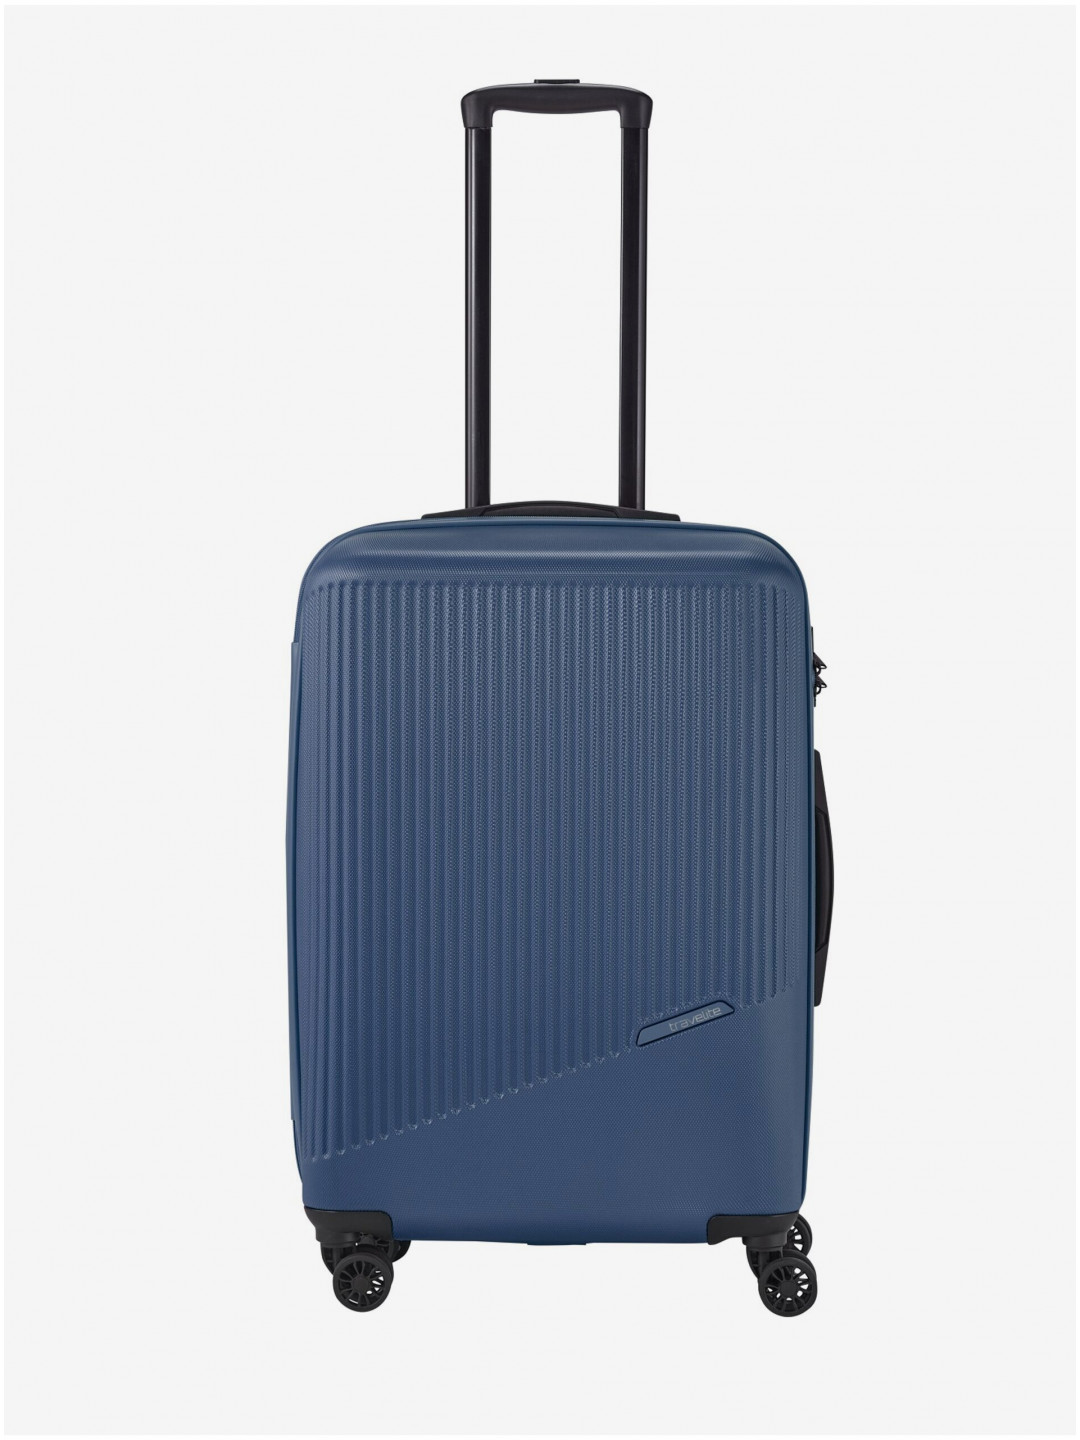 Modrý cestovní kufr Travelite Bali M Blue